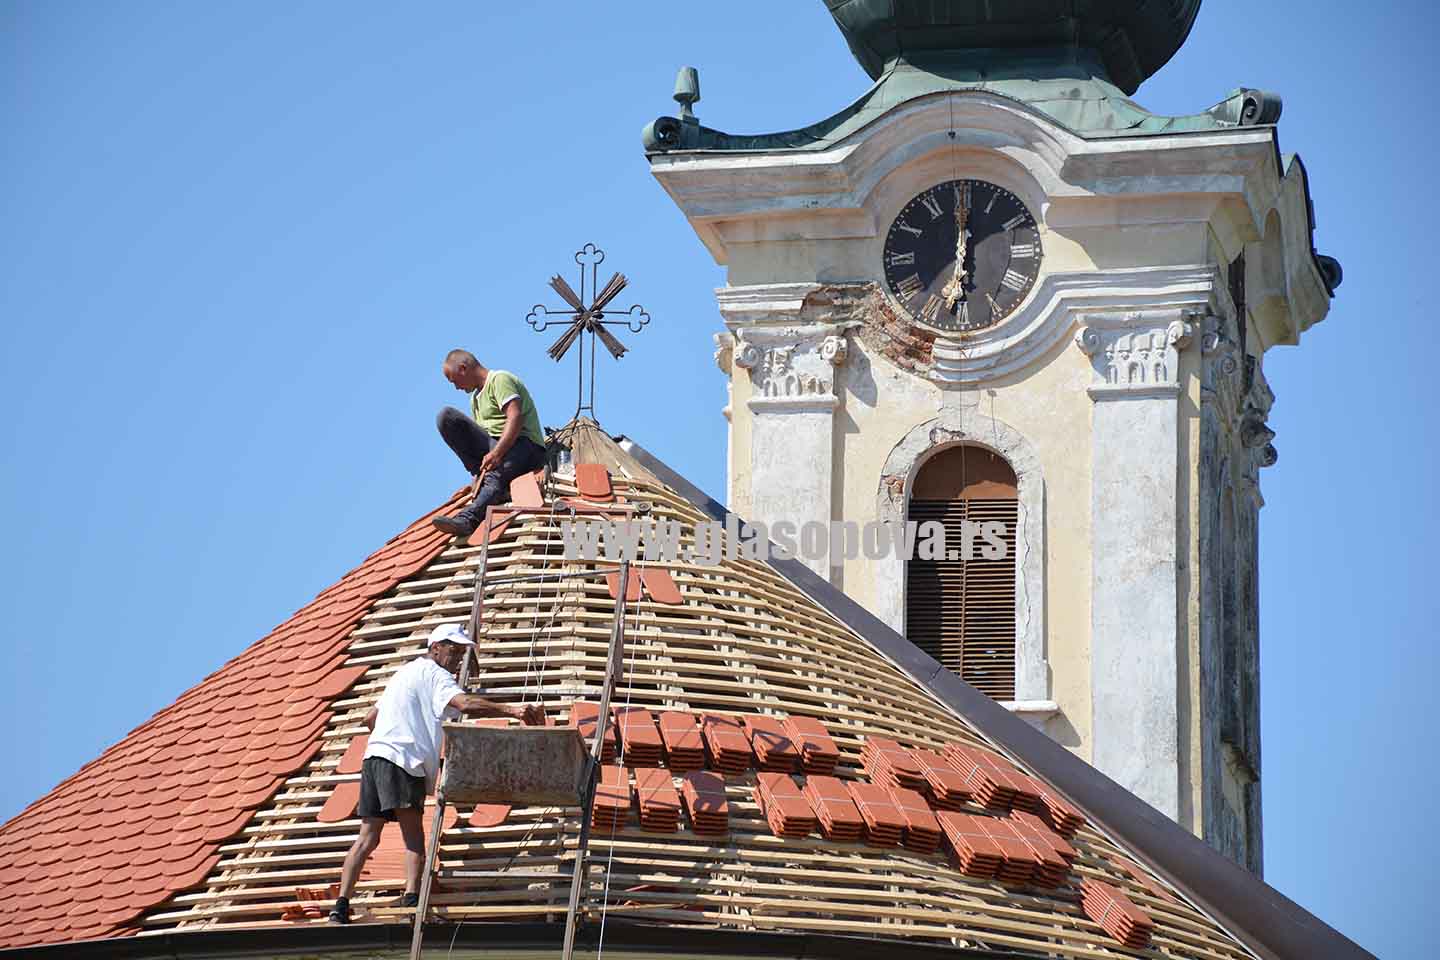 Program sufinansiranja verskih zajednica: Radovi na rekonstrukciji krova crkve u Barandi (video)